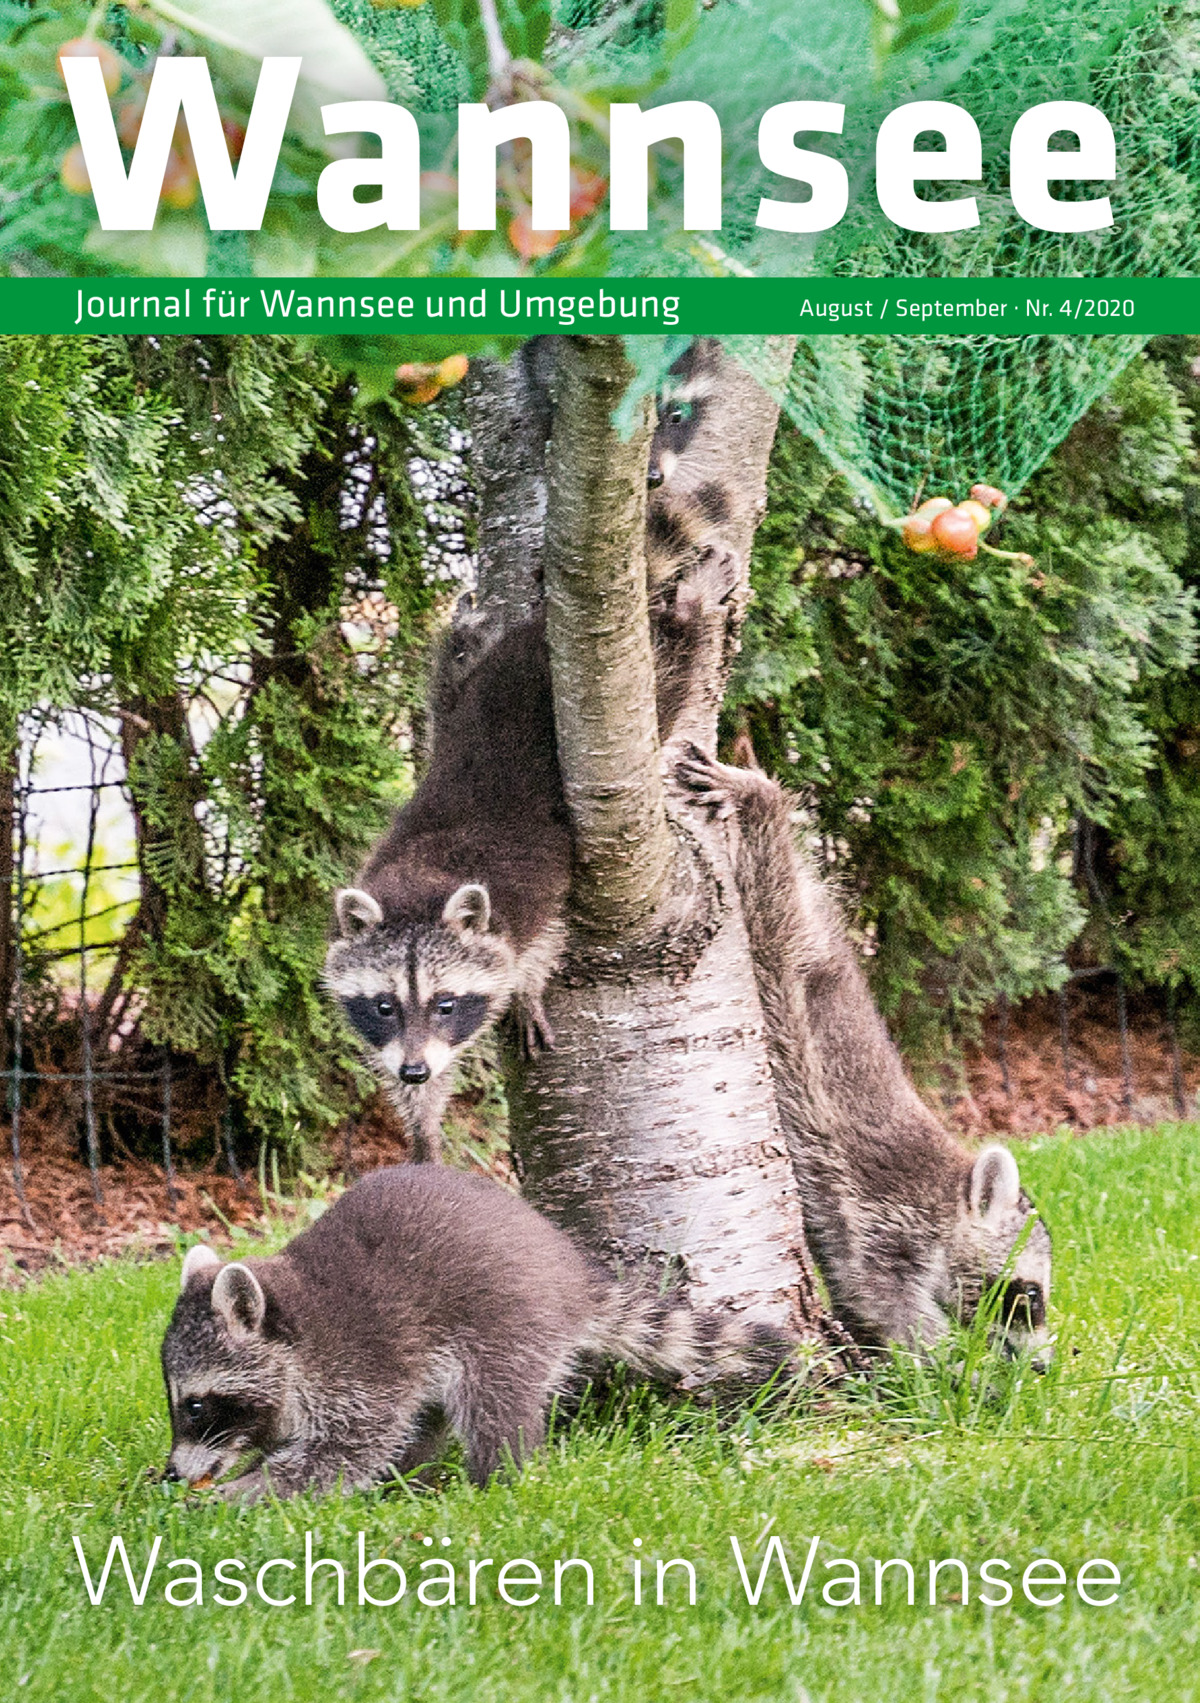 Wannsee Journal für Wannsee und Umgebung  August / September · Nr. 4/2020  Waschbären in Wannsee